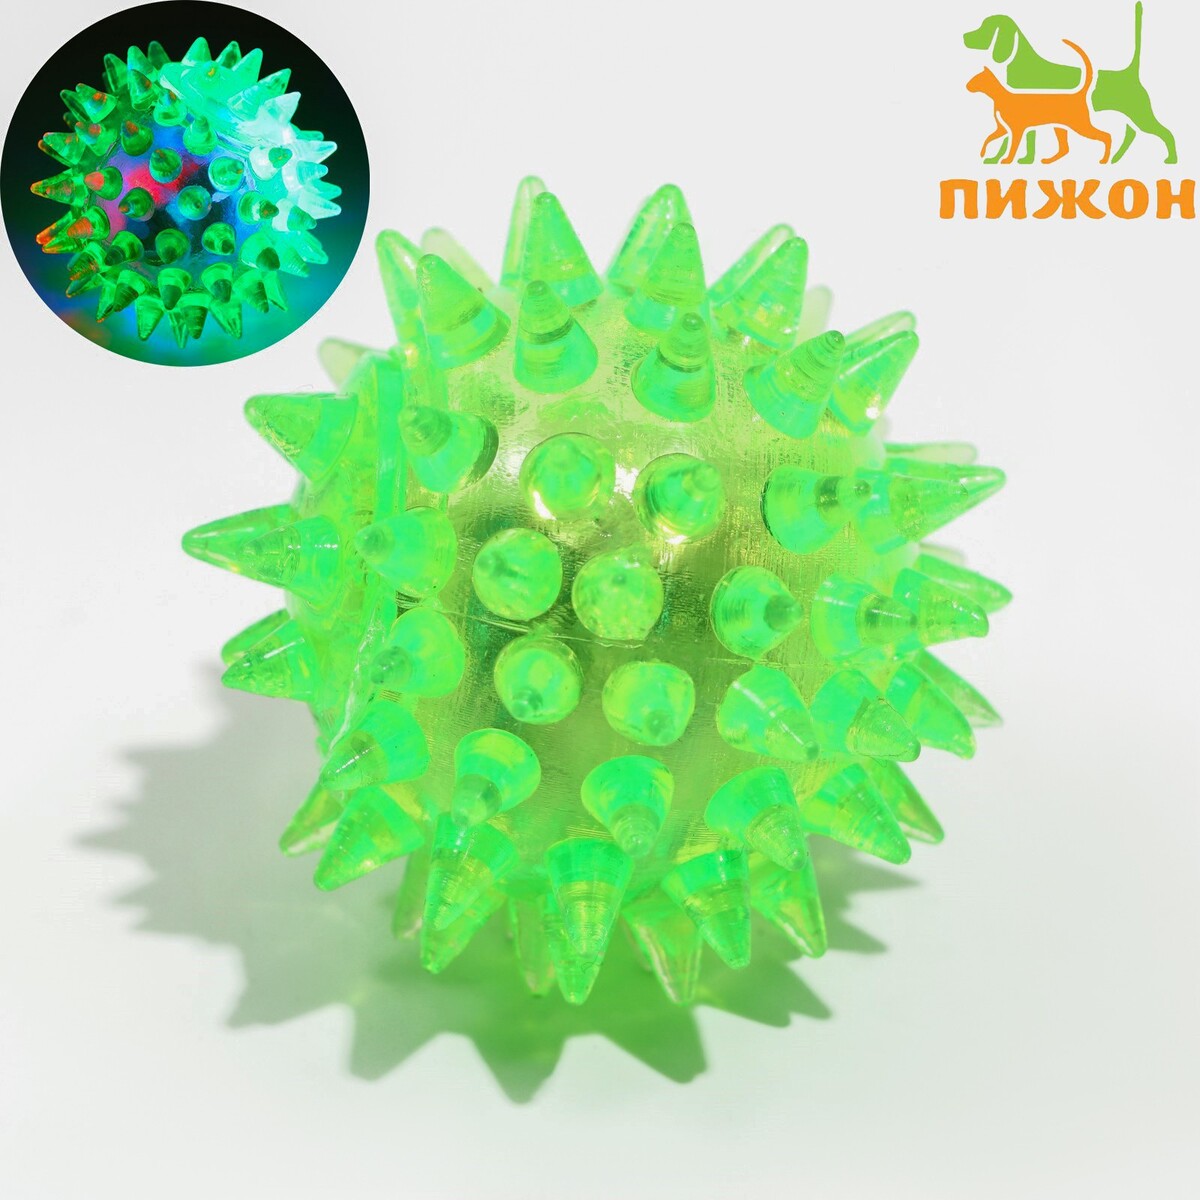 Мяч светящийся для животных малый, tpr, 4,5 см, зелёный Пижон 01222158 - фото 1